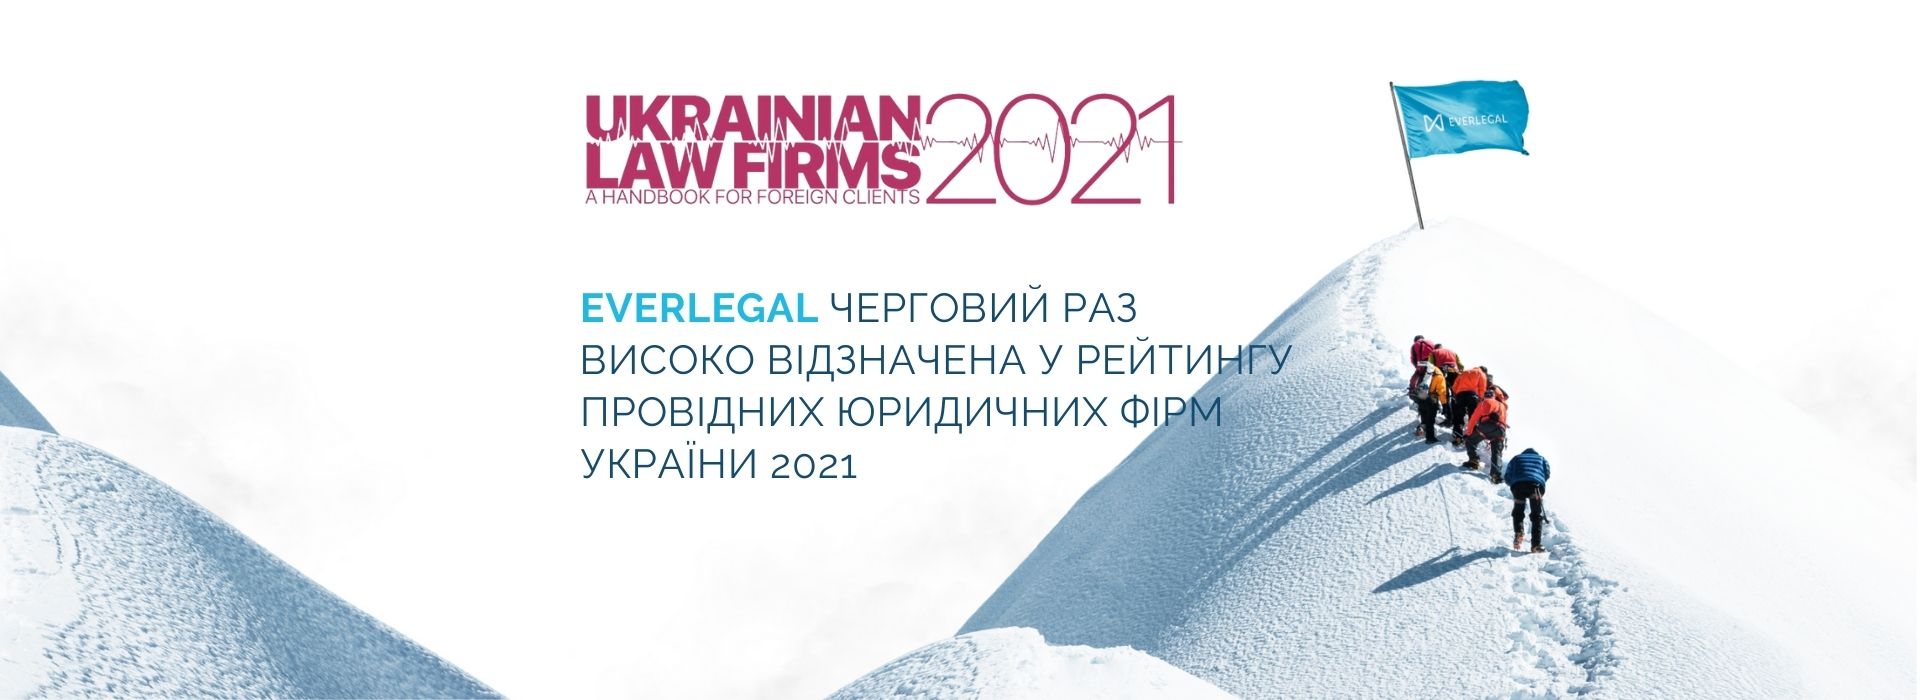 EVERLEGAL у рейтингу “Ukrainian Law Firms. A Handbook for Foreign Clients 2021”